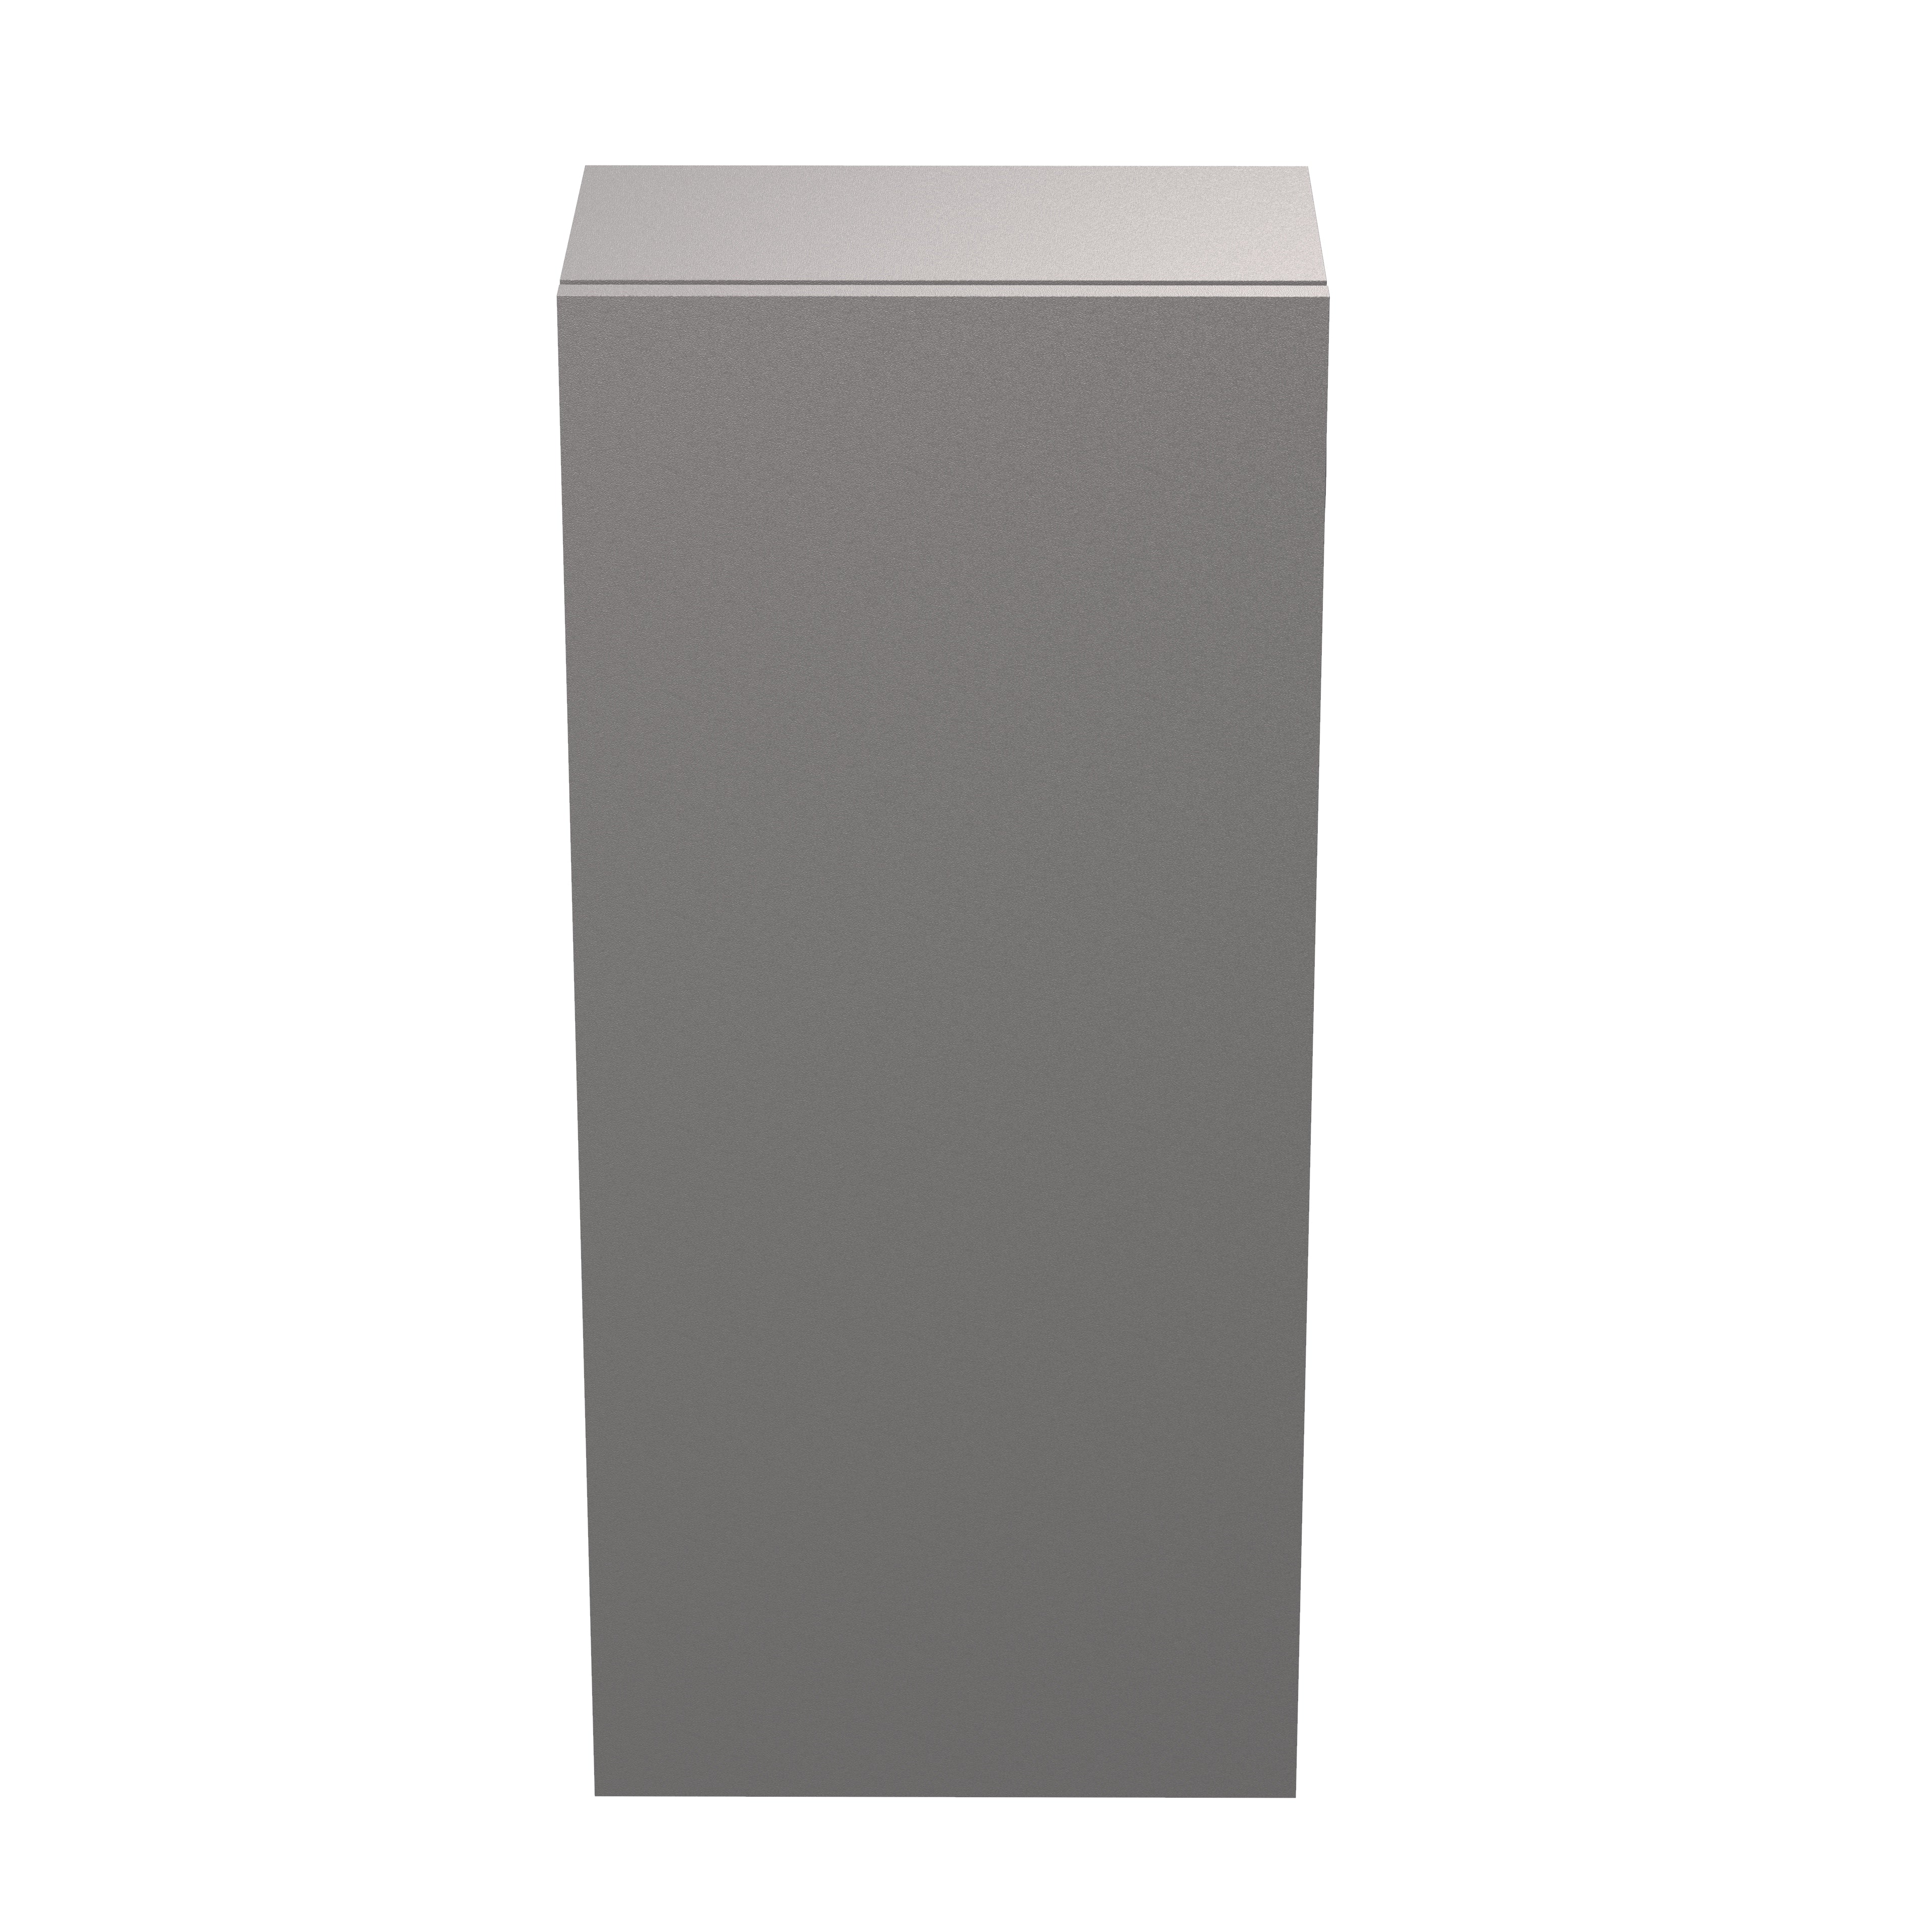 Horizon Aquascape Cabinet 36 (36x22)